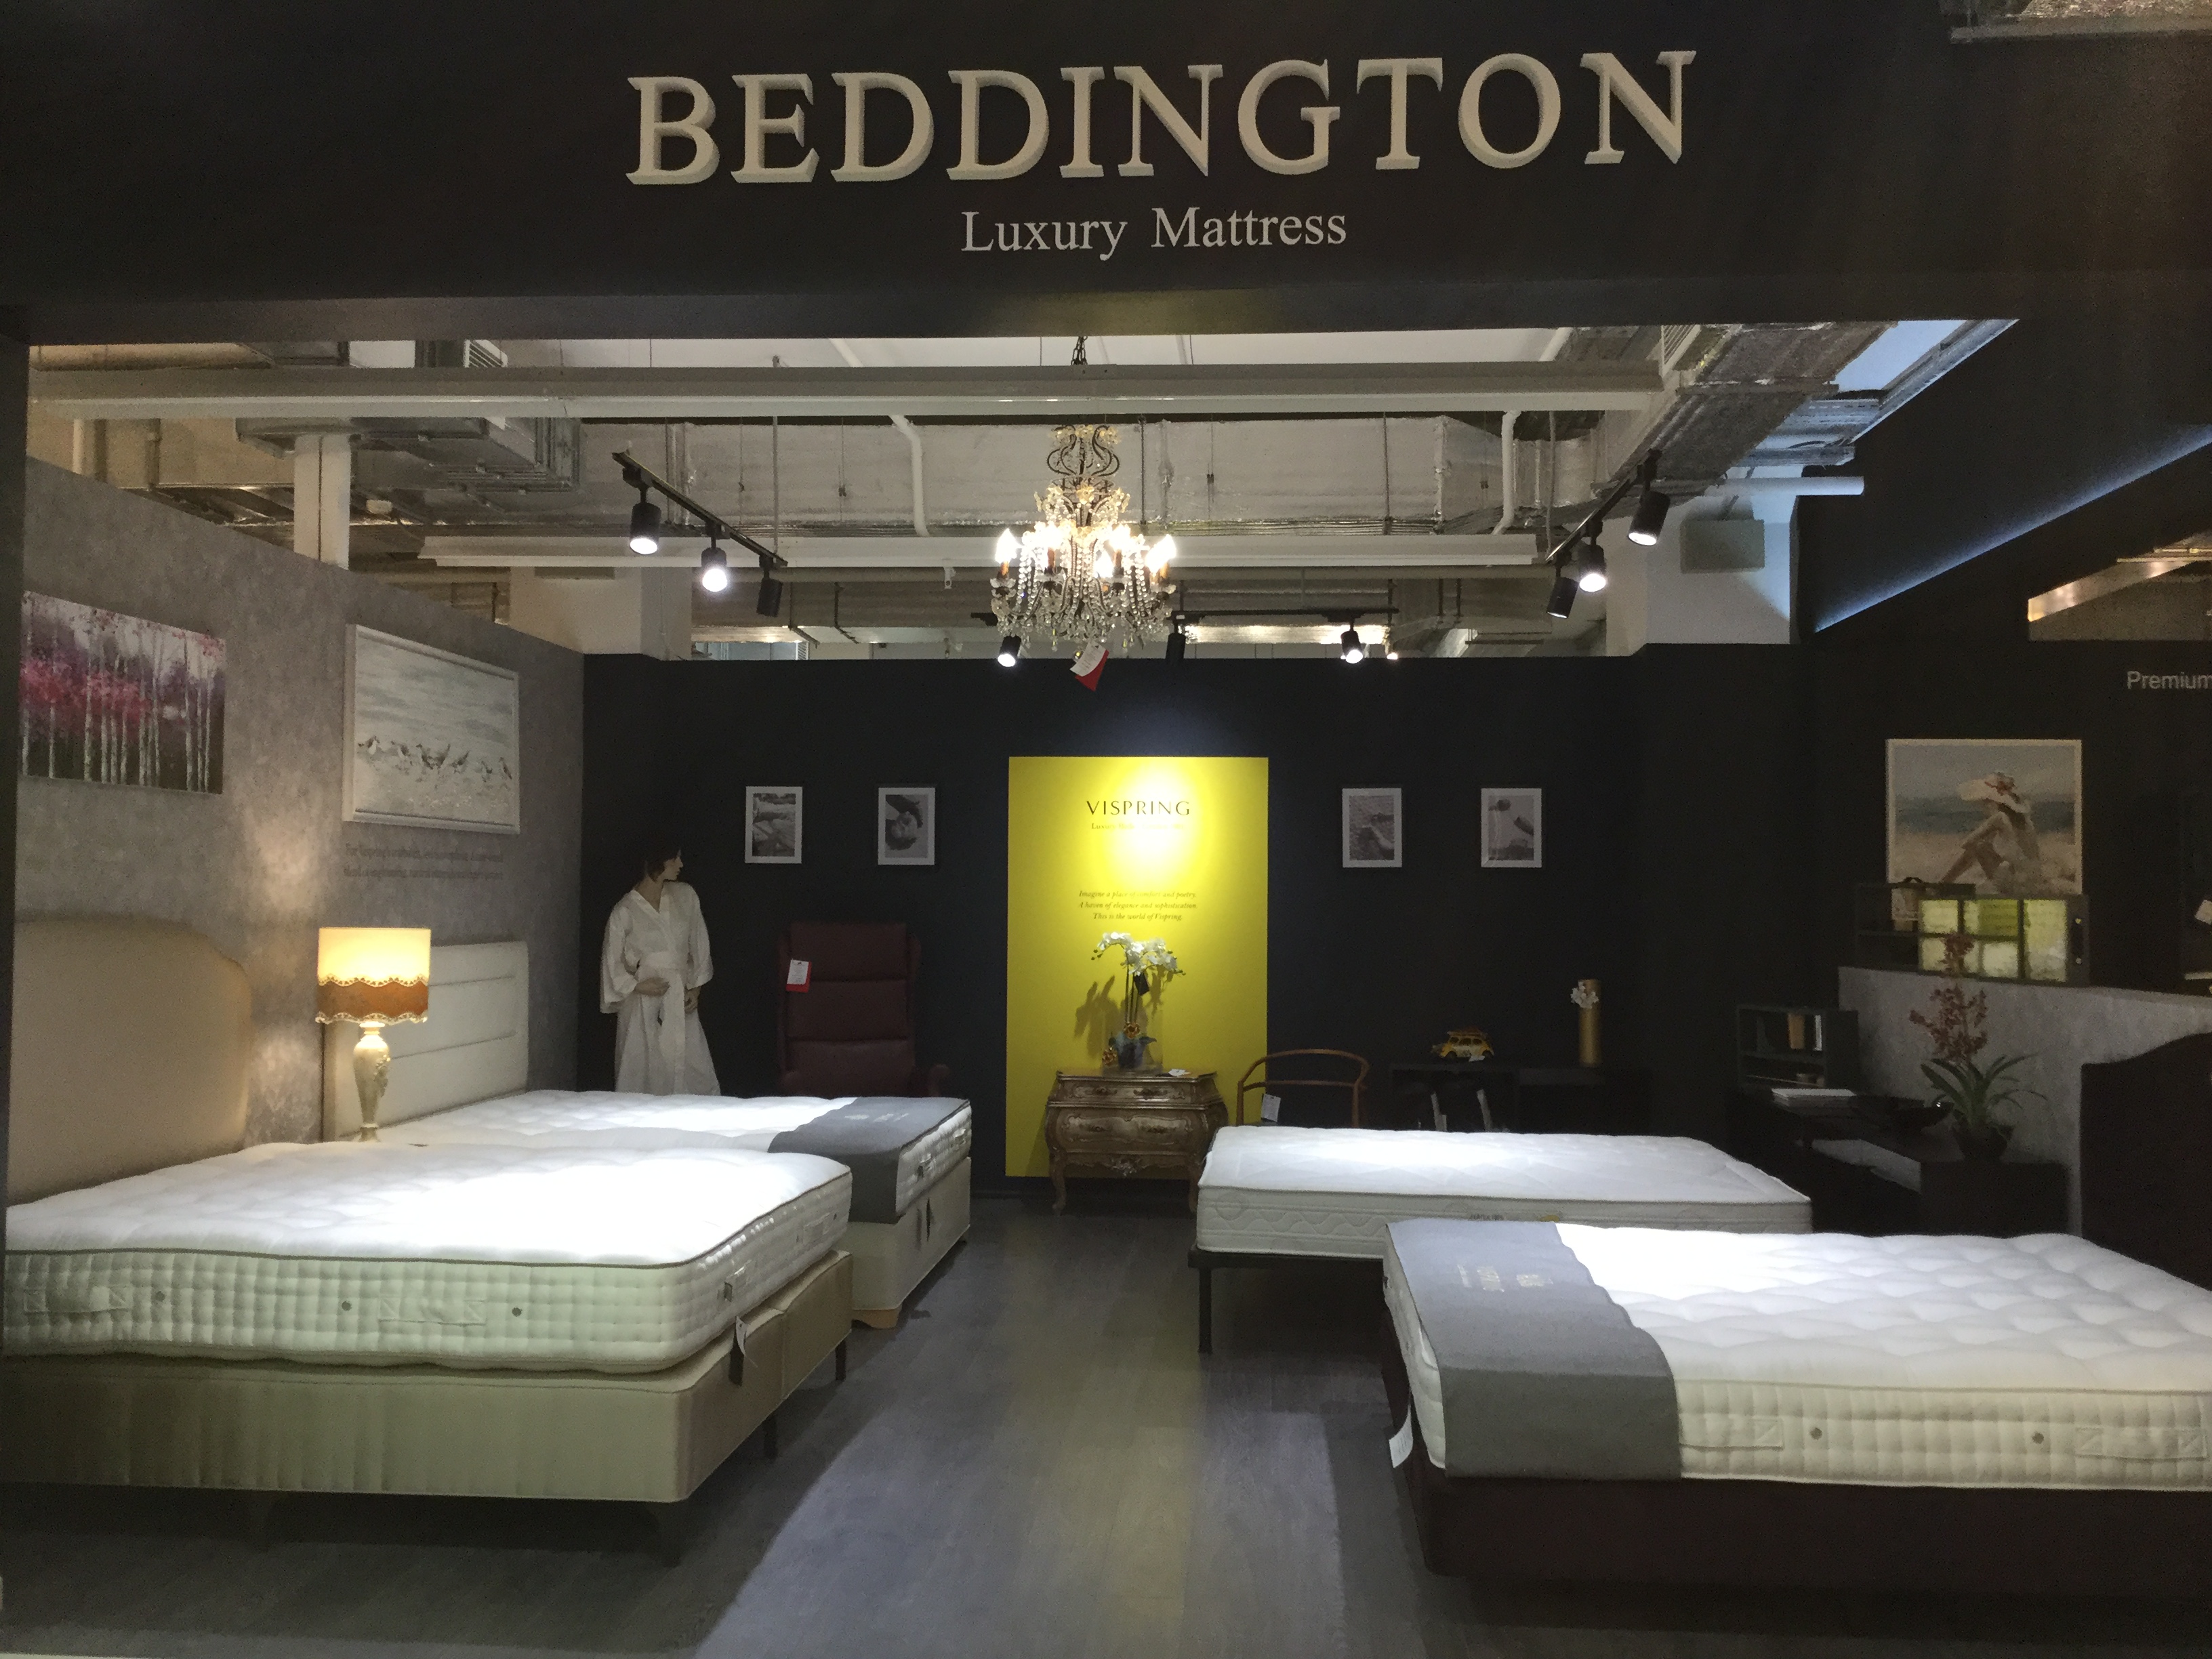 Beddington.ru — первый в России салон и интернет-магазин импортных матрасов, кроватей, подушек, одеял и аксессуаров для сна лучших мировых брендов.